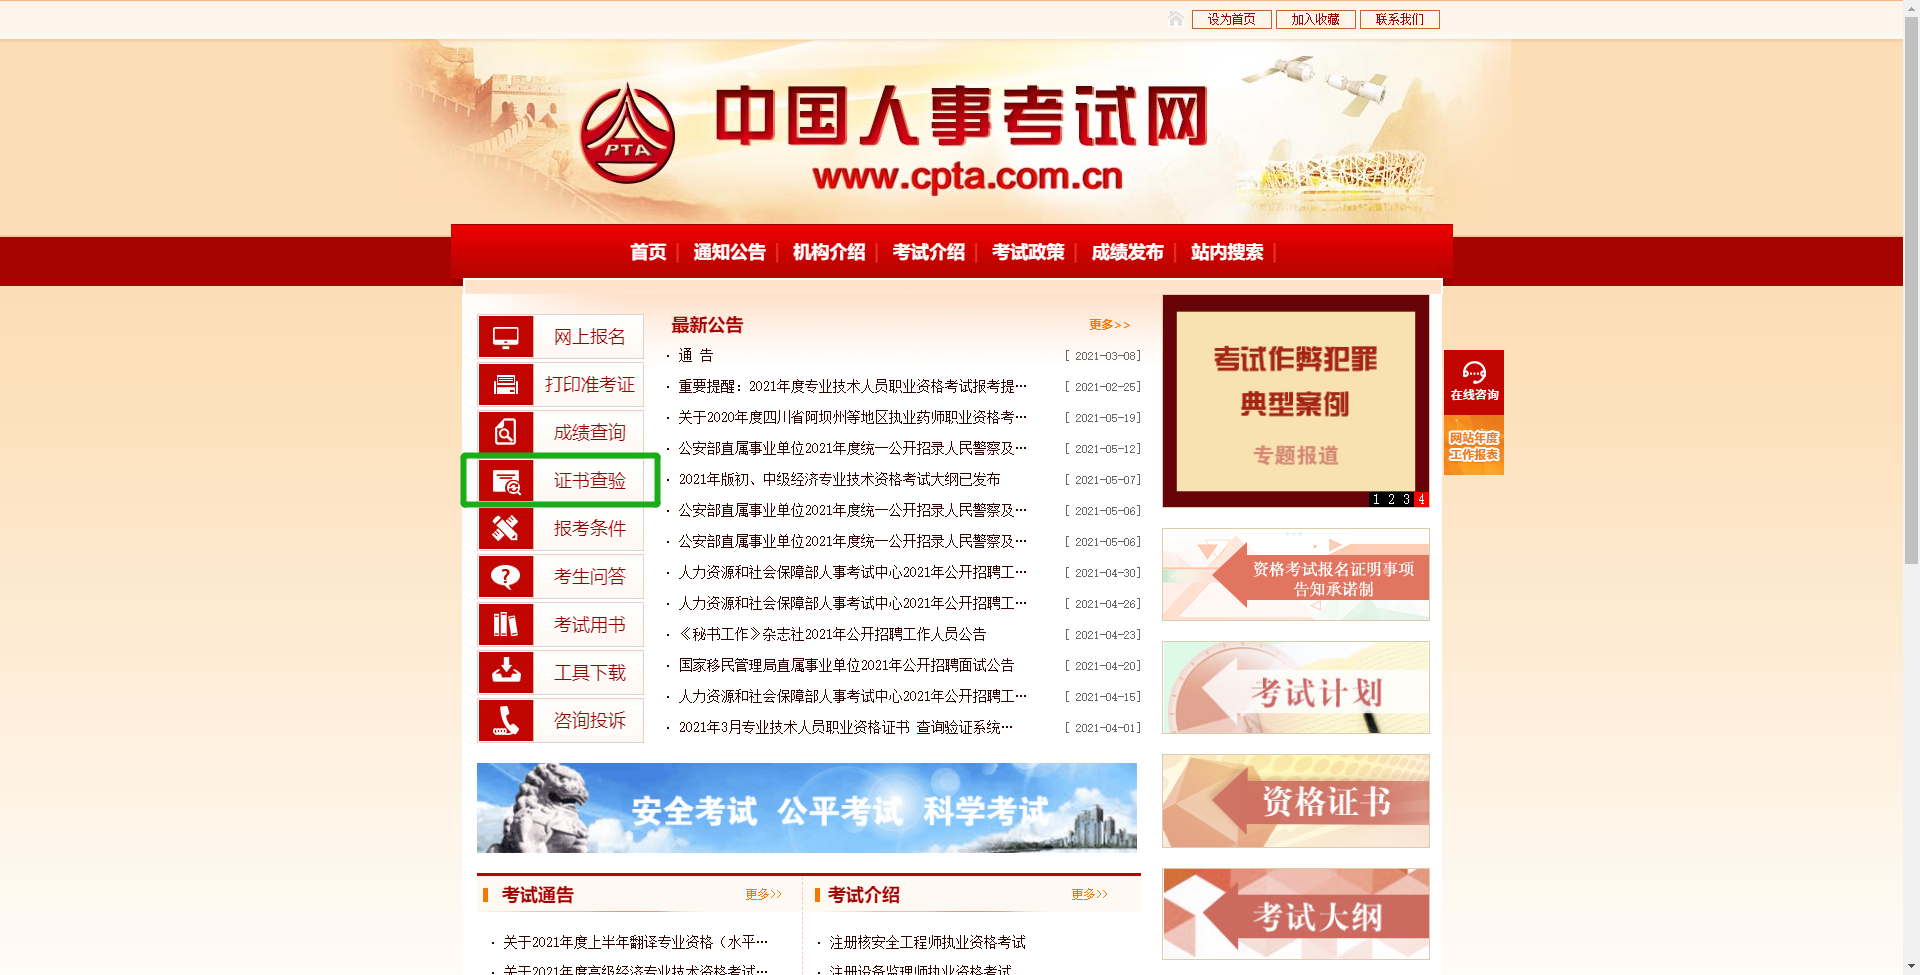 中国人事考试网2021年护师考试合格证书查验步骤